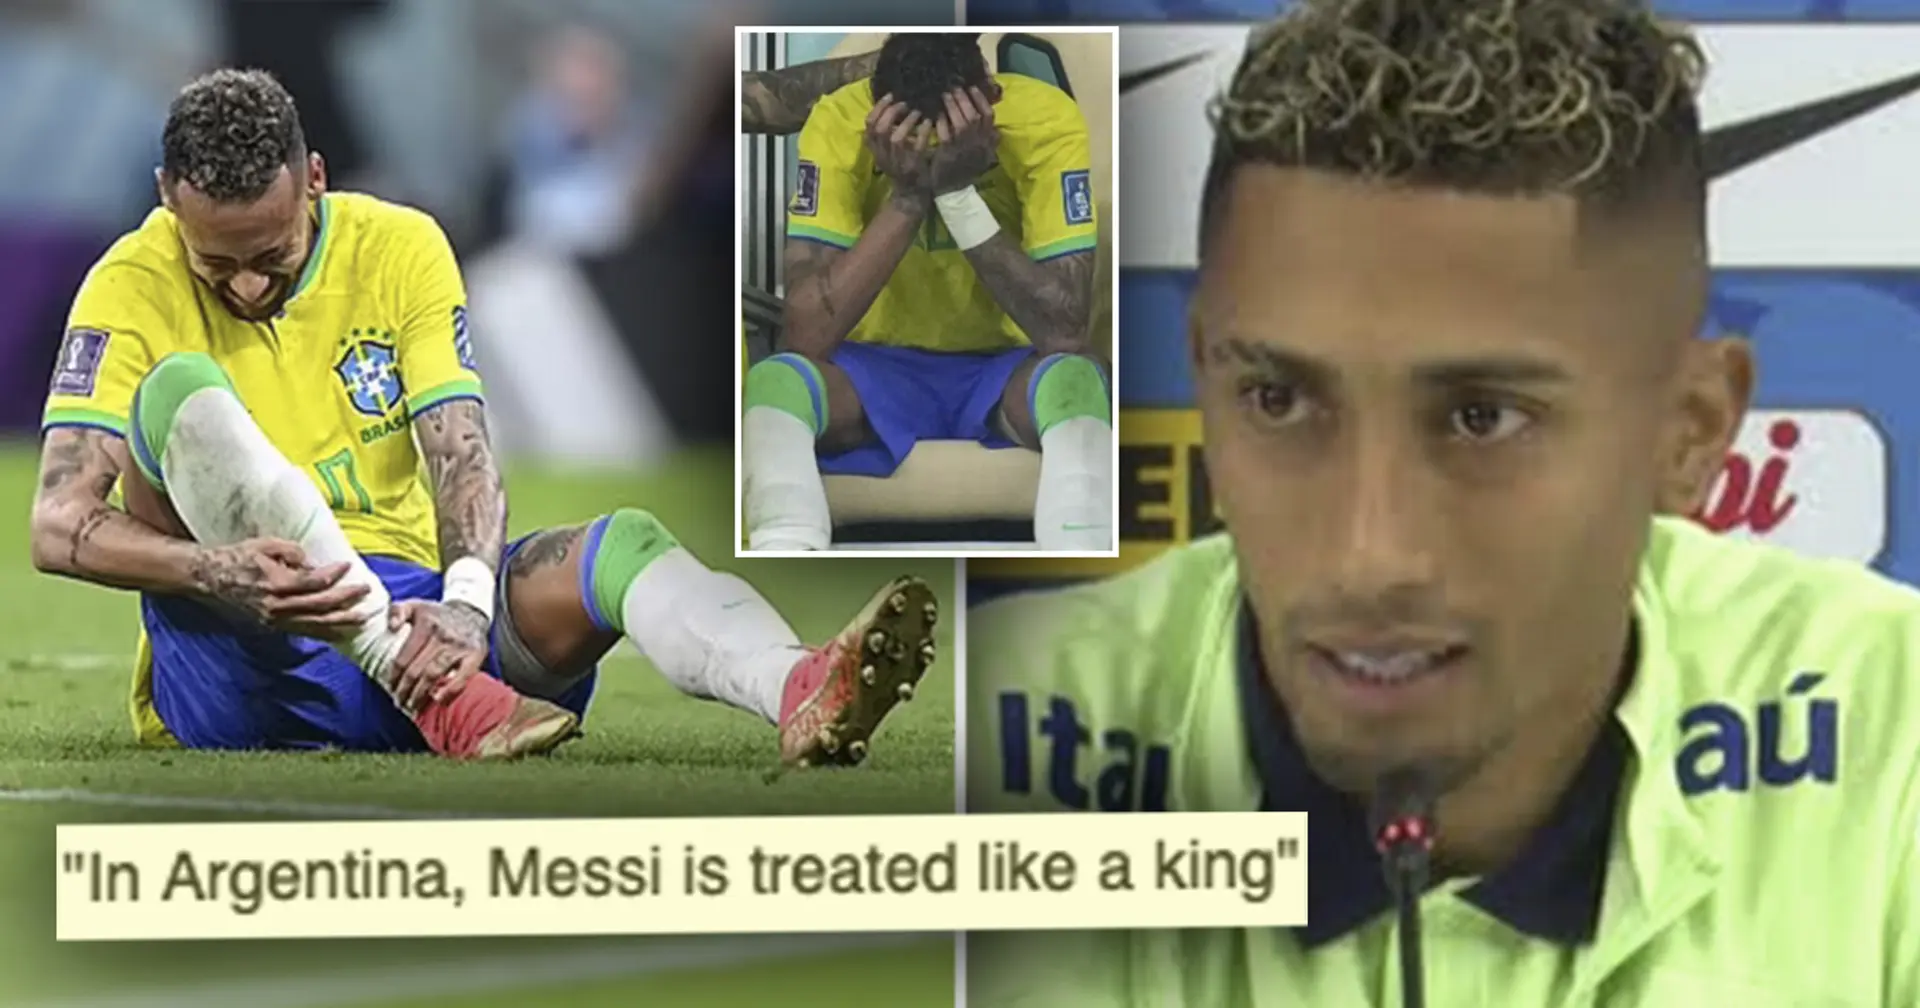 "Ils veulent qu'il se casse la jambe": Raphinha tacle les fans du Brésil au milieu de la blessure de Neymar